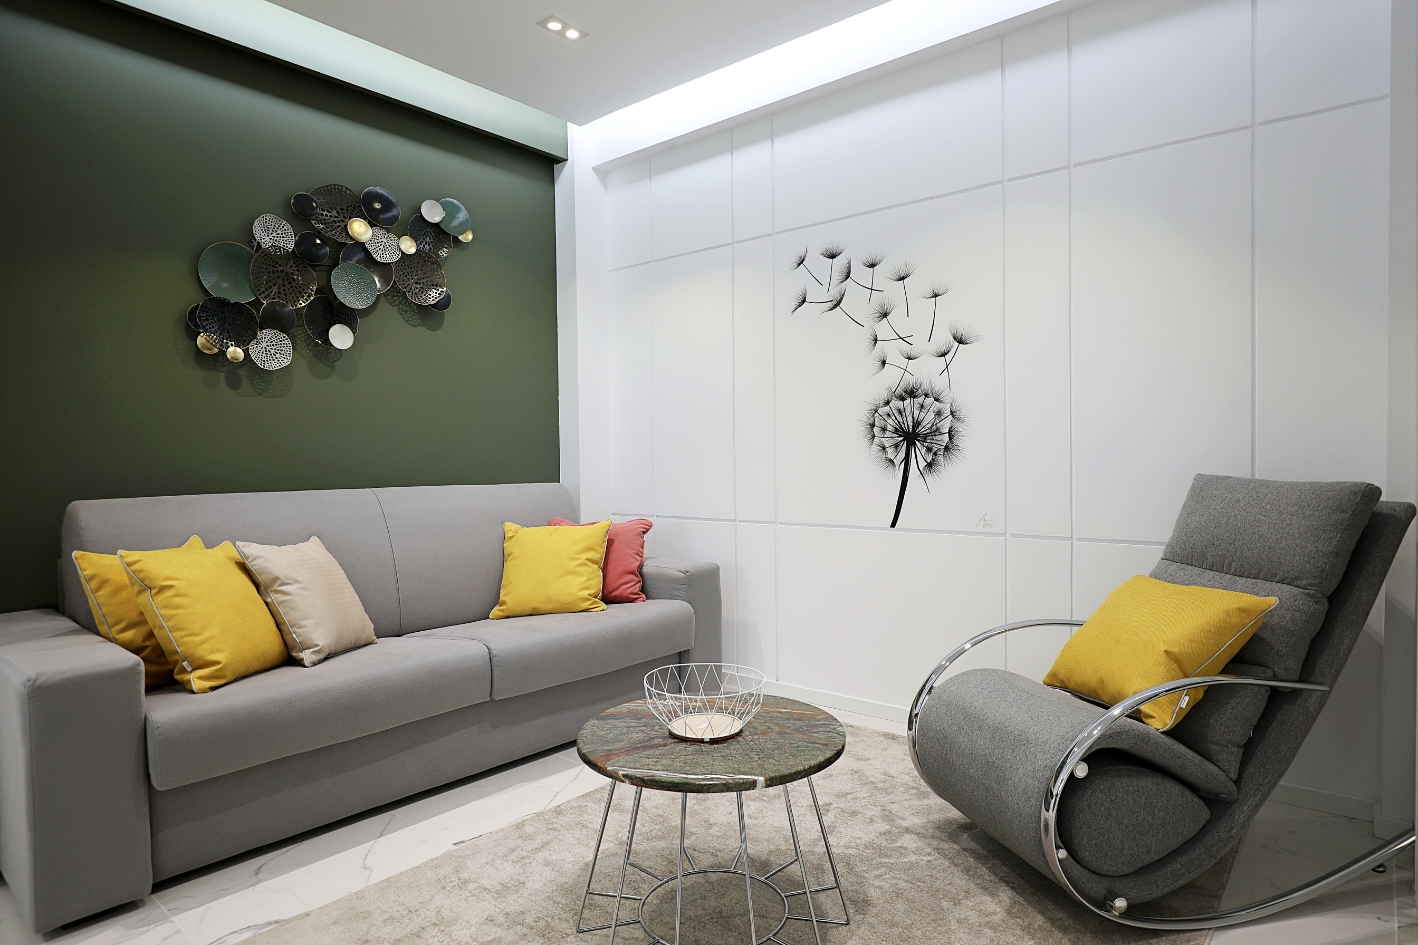 Design interior pentru un living amenajat in stil modern, cu un perete de accent de culoare verde.